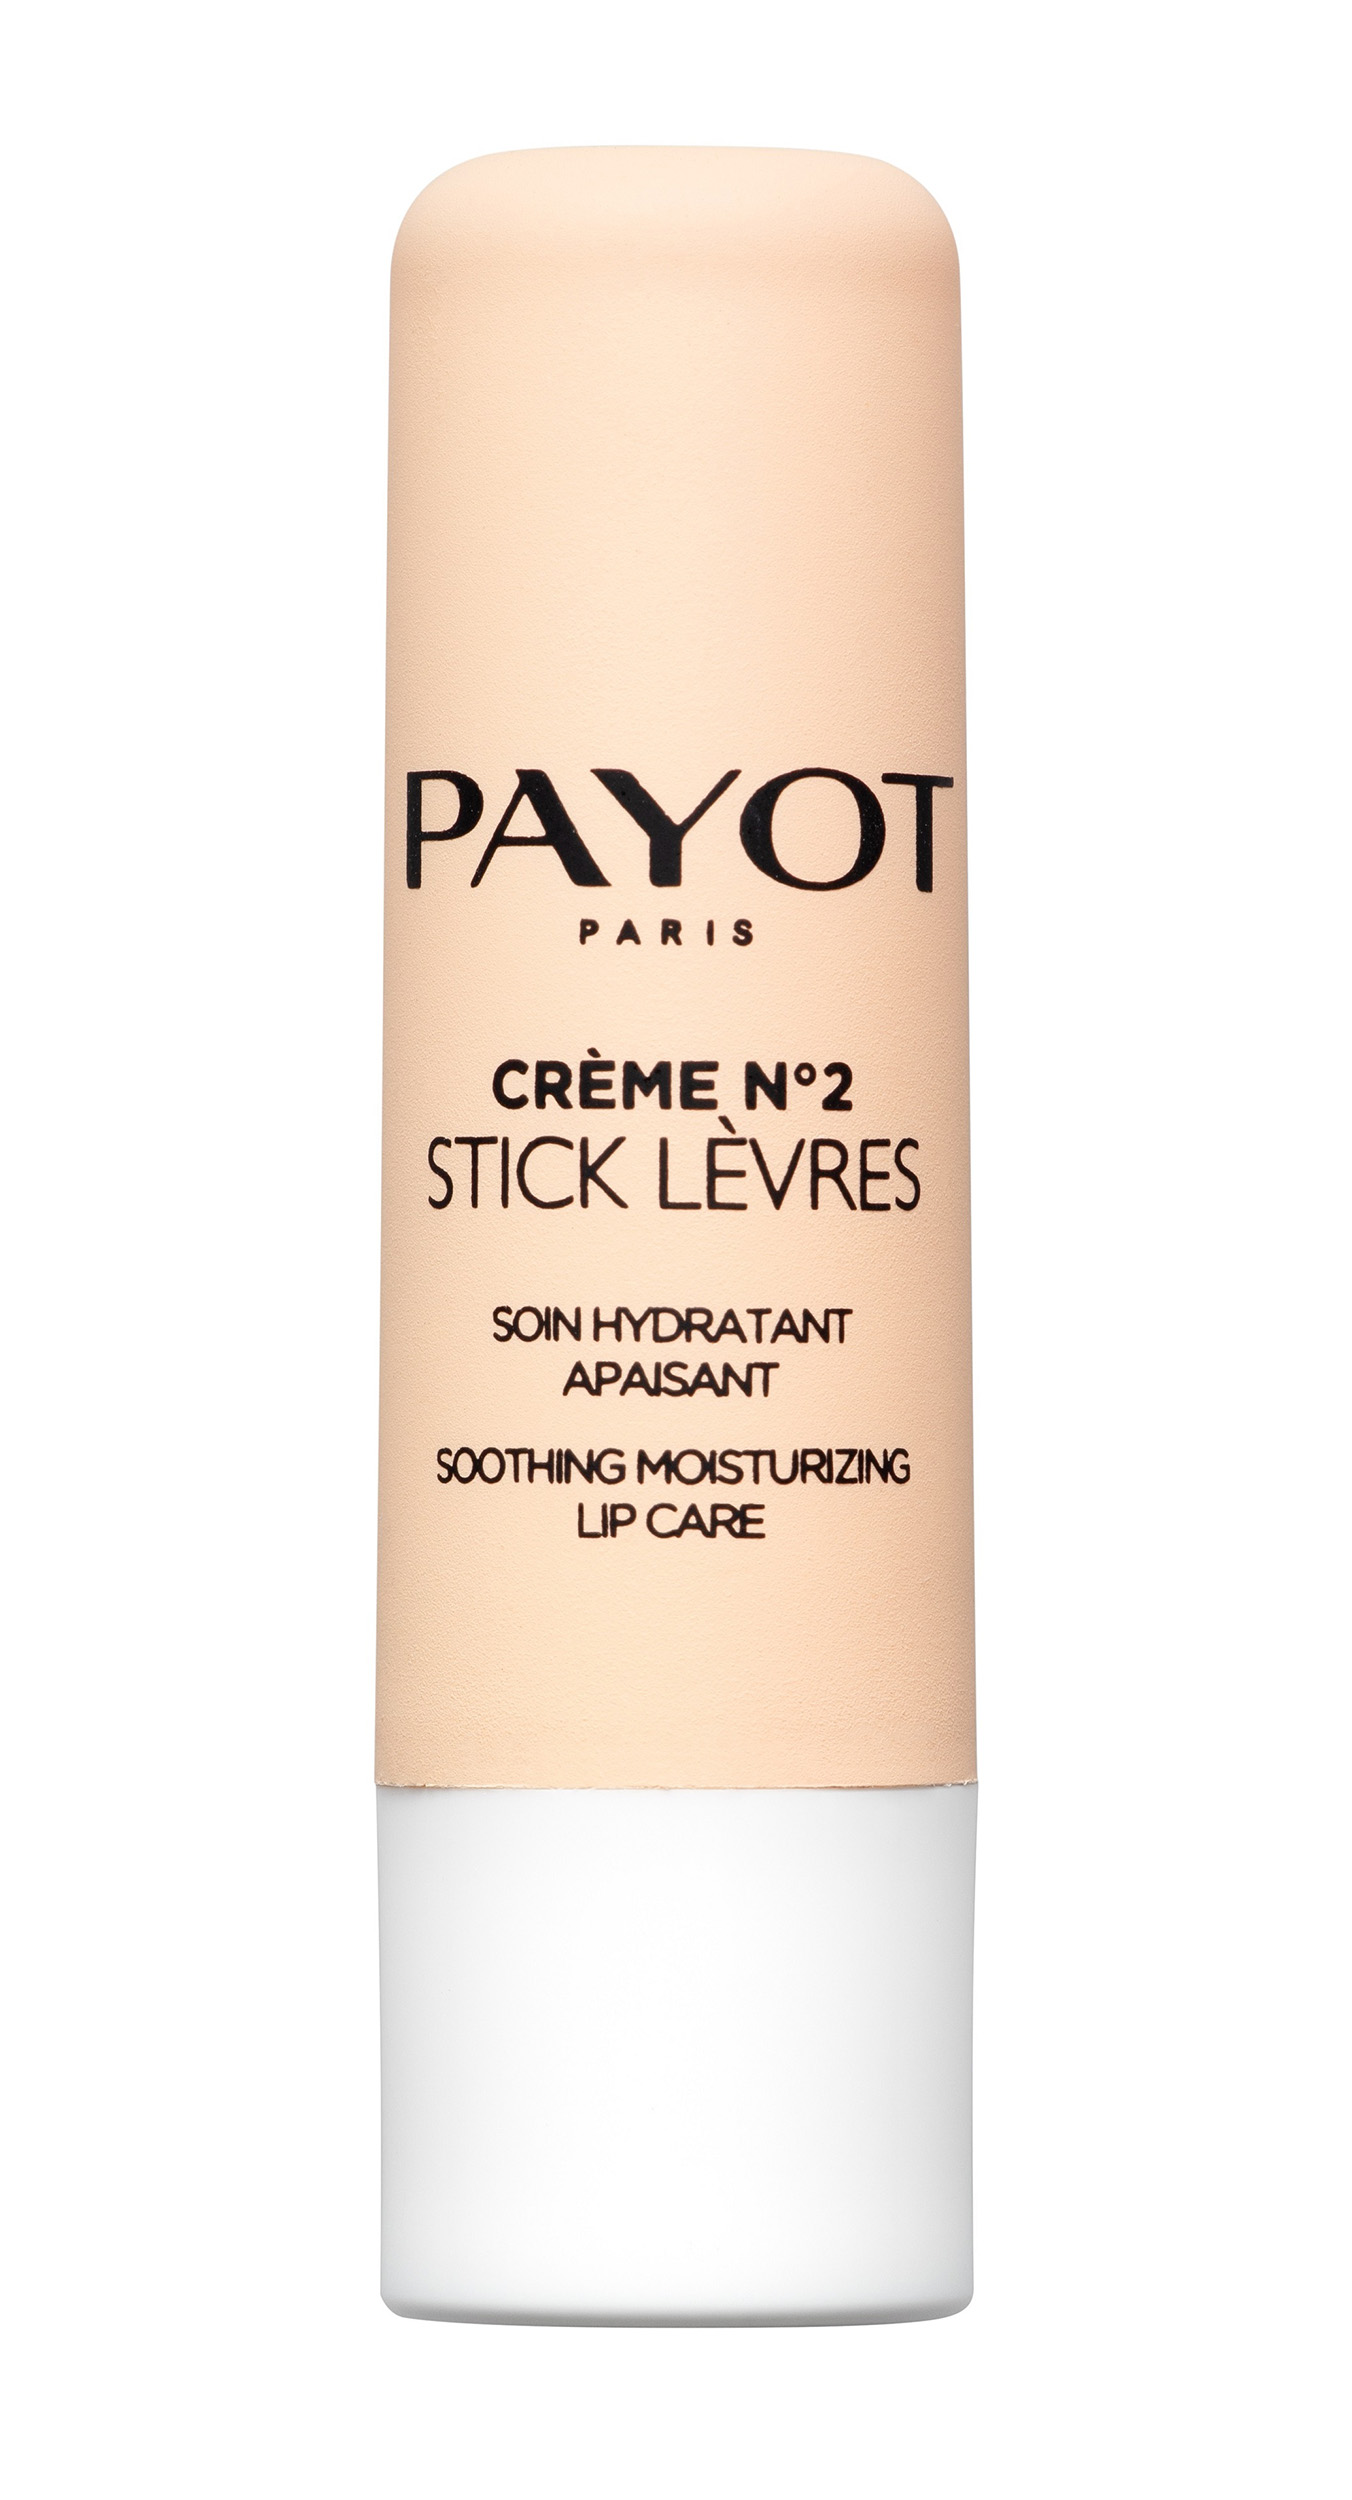 Payot Бальзам увлажняющий и успокаивающий кожу губ Stick Lèvres, 4 г (Payot, CREME N°2)